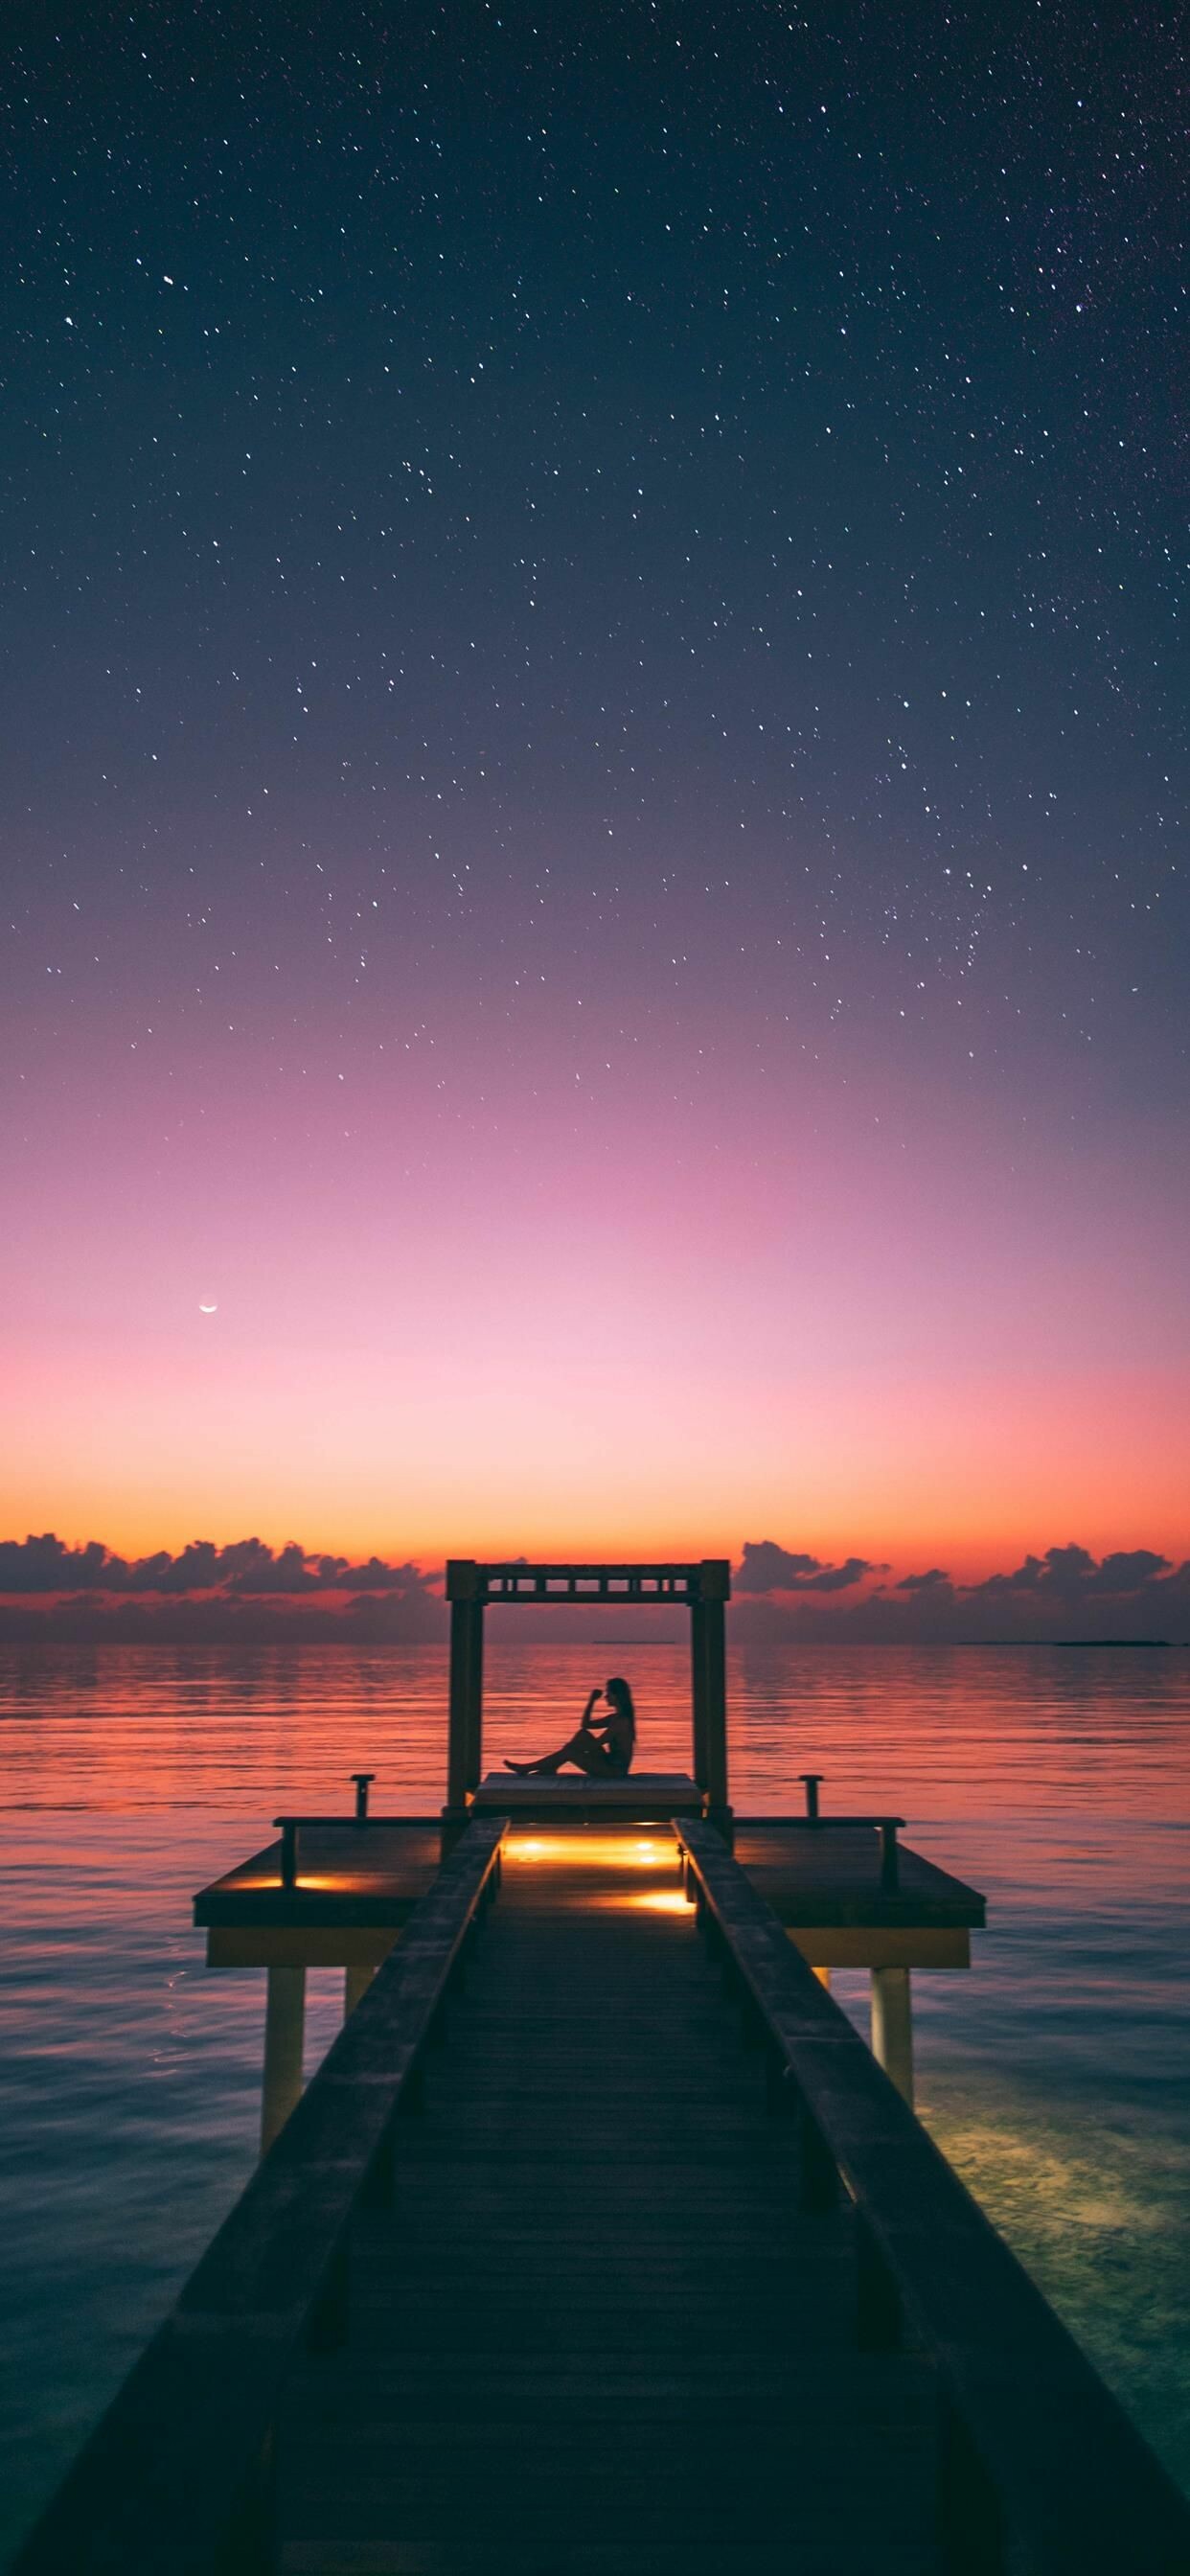 Maldives sunset, Tranquil beauty, Breathtaking views, Serene ambiance, 1250x2690 HD Phone